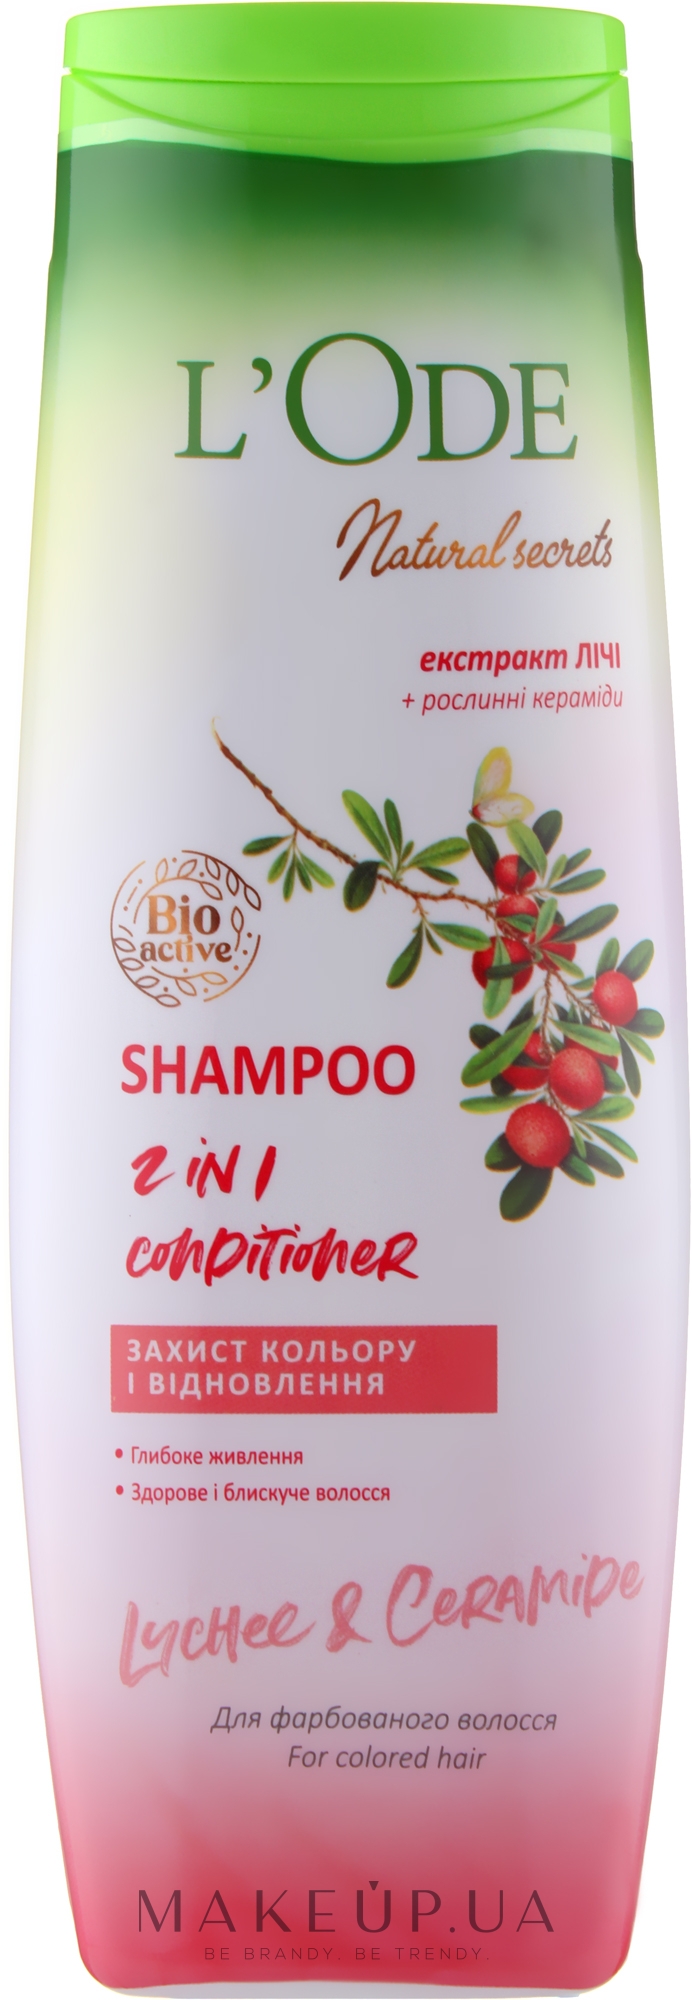 Шампунь-кондиціонер "Захист кольору й відновлення" для фарбованого волосся - L'Ode Natural Secrets Shampoo 2 In 1 Conditioner Lychee & Ceramide — фото 400ml